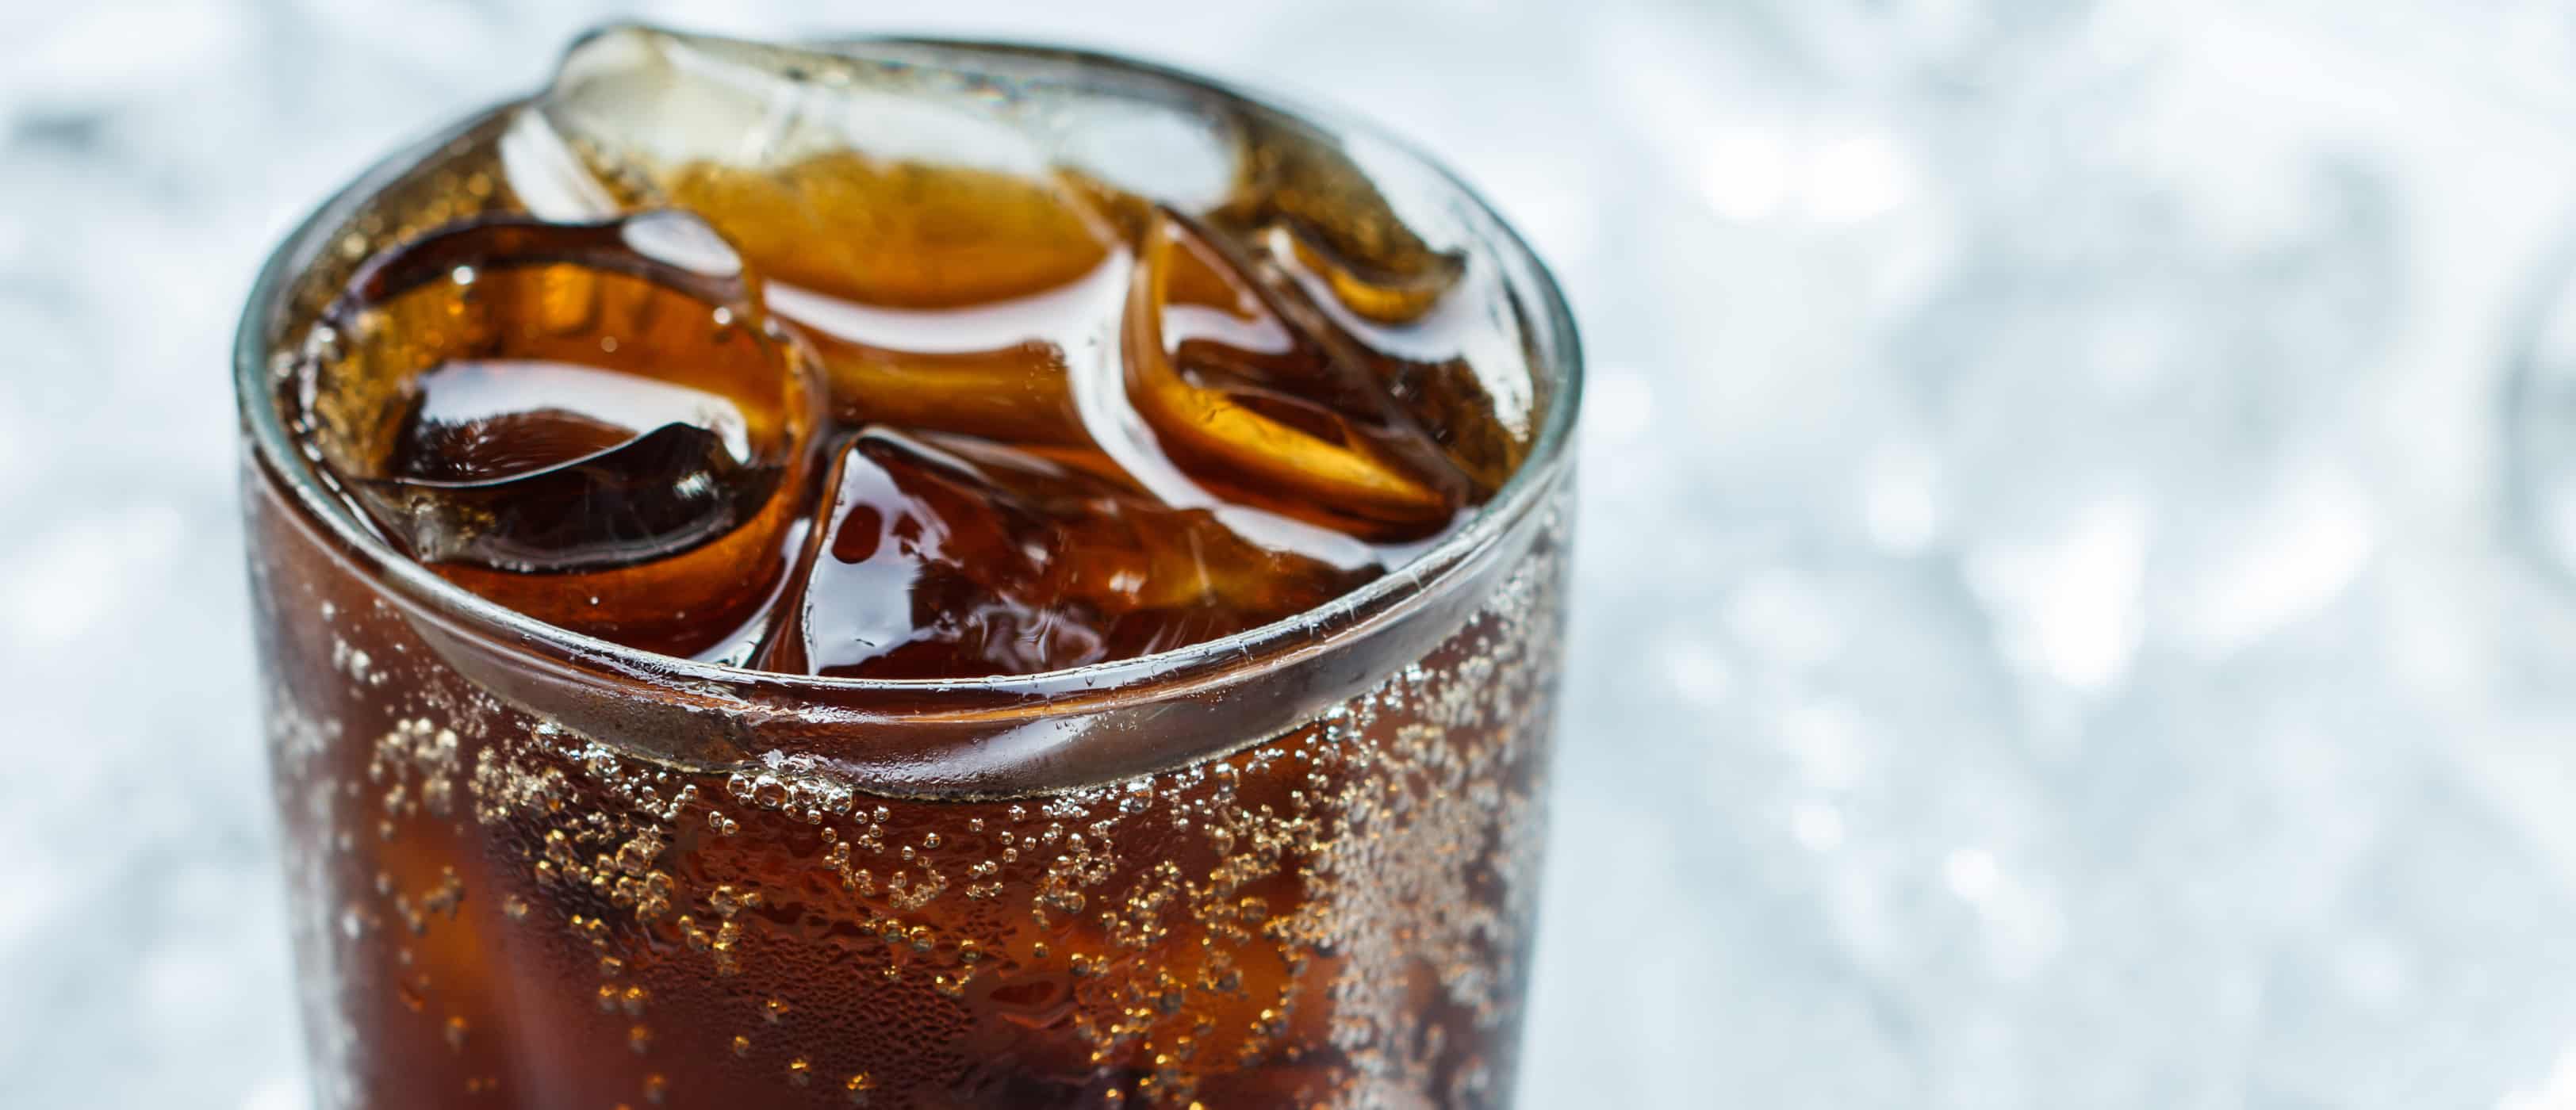 कृत्रिम स्वीटनर aspartame के खतरे का मिथक